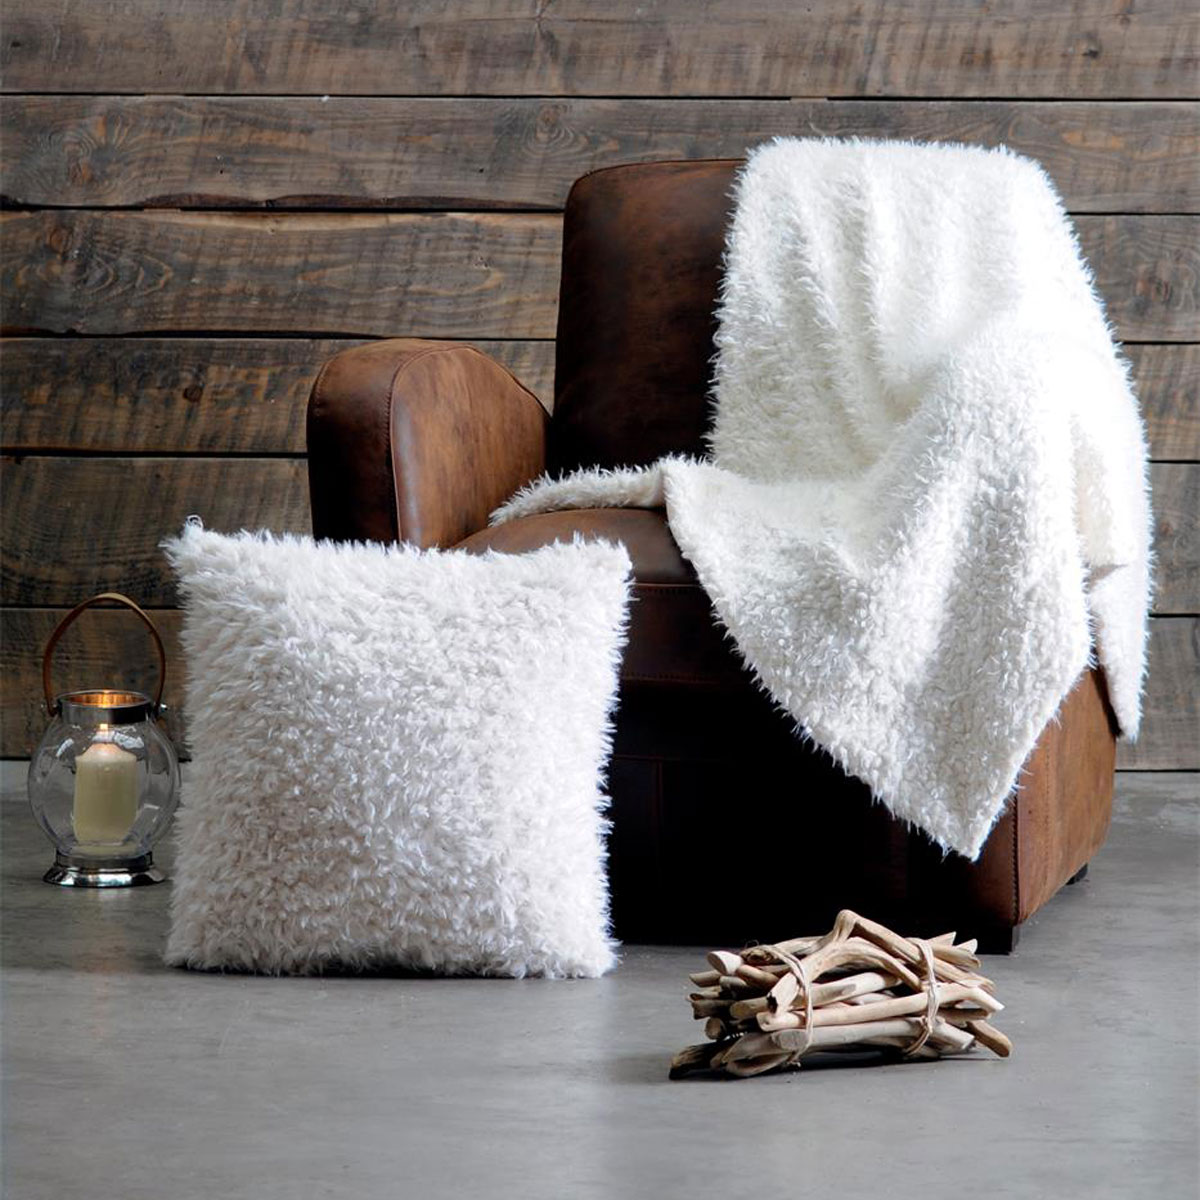 White sheep cushion cover 40 x 40 cm